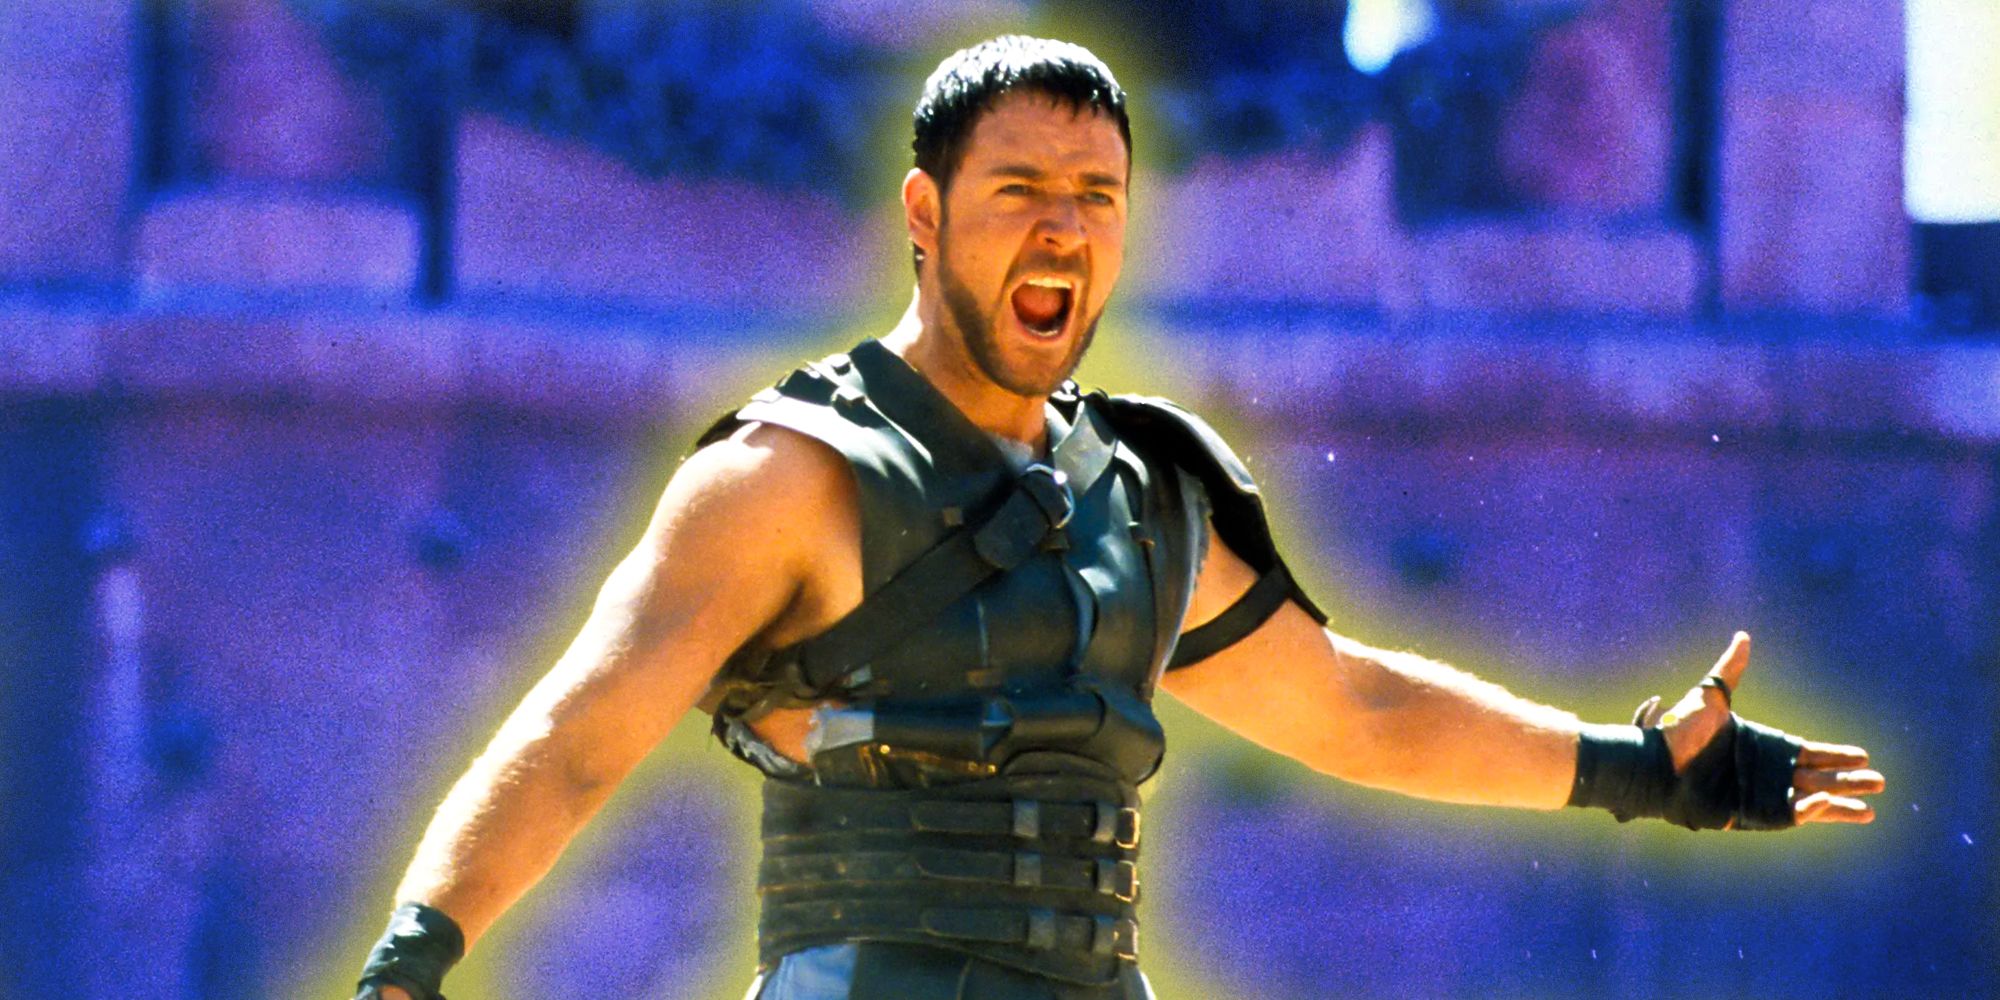 Russell Crowe desaparecido de Gladiator 2 significa que es necesario que suceda otra secuela de acción histórica